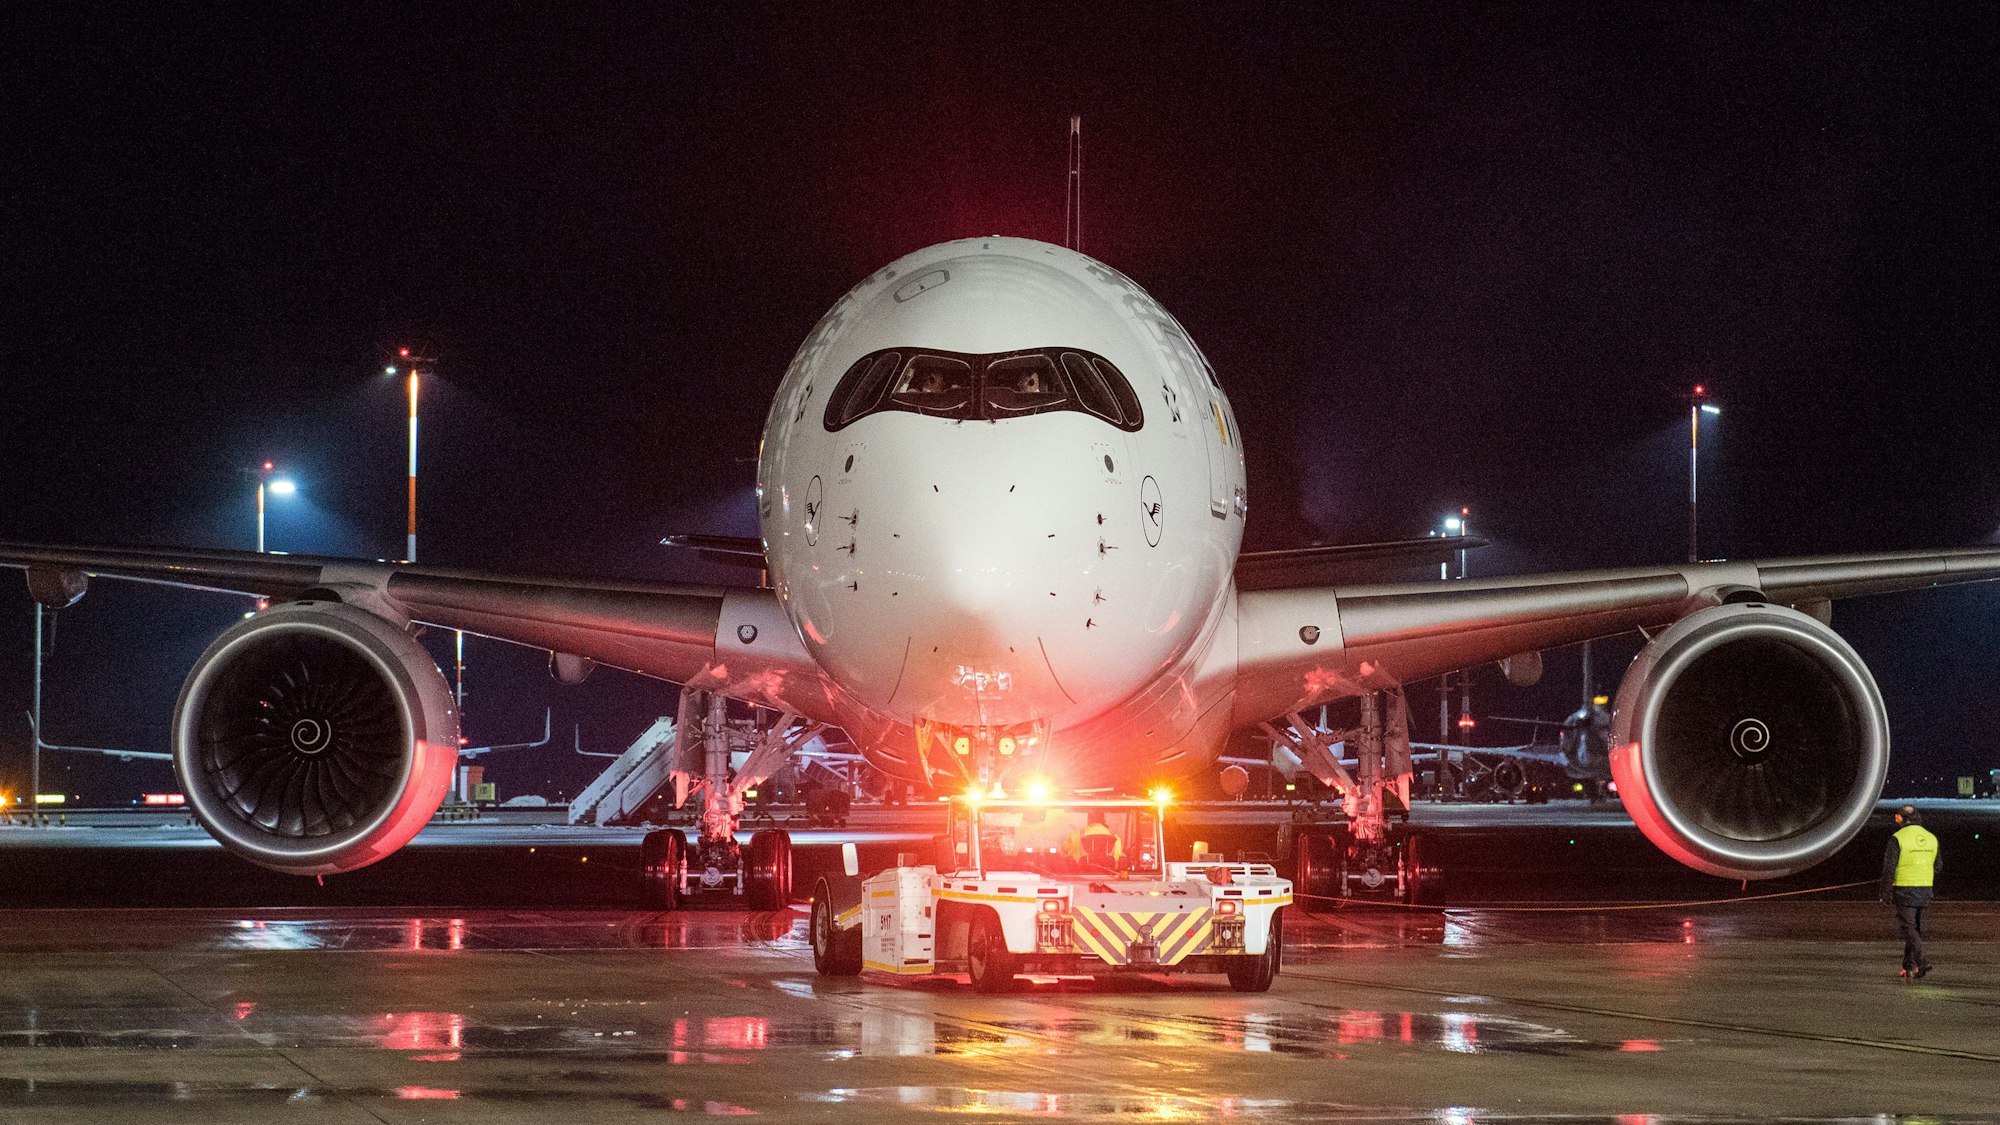 Ein Lufthansa-Flugzeug vom Typ Airbus A350 wird auf einem Rollfeld eines Flughafens in Position gezogen.